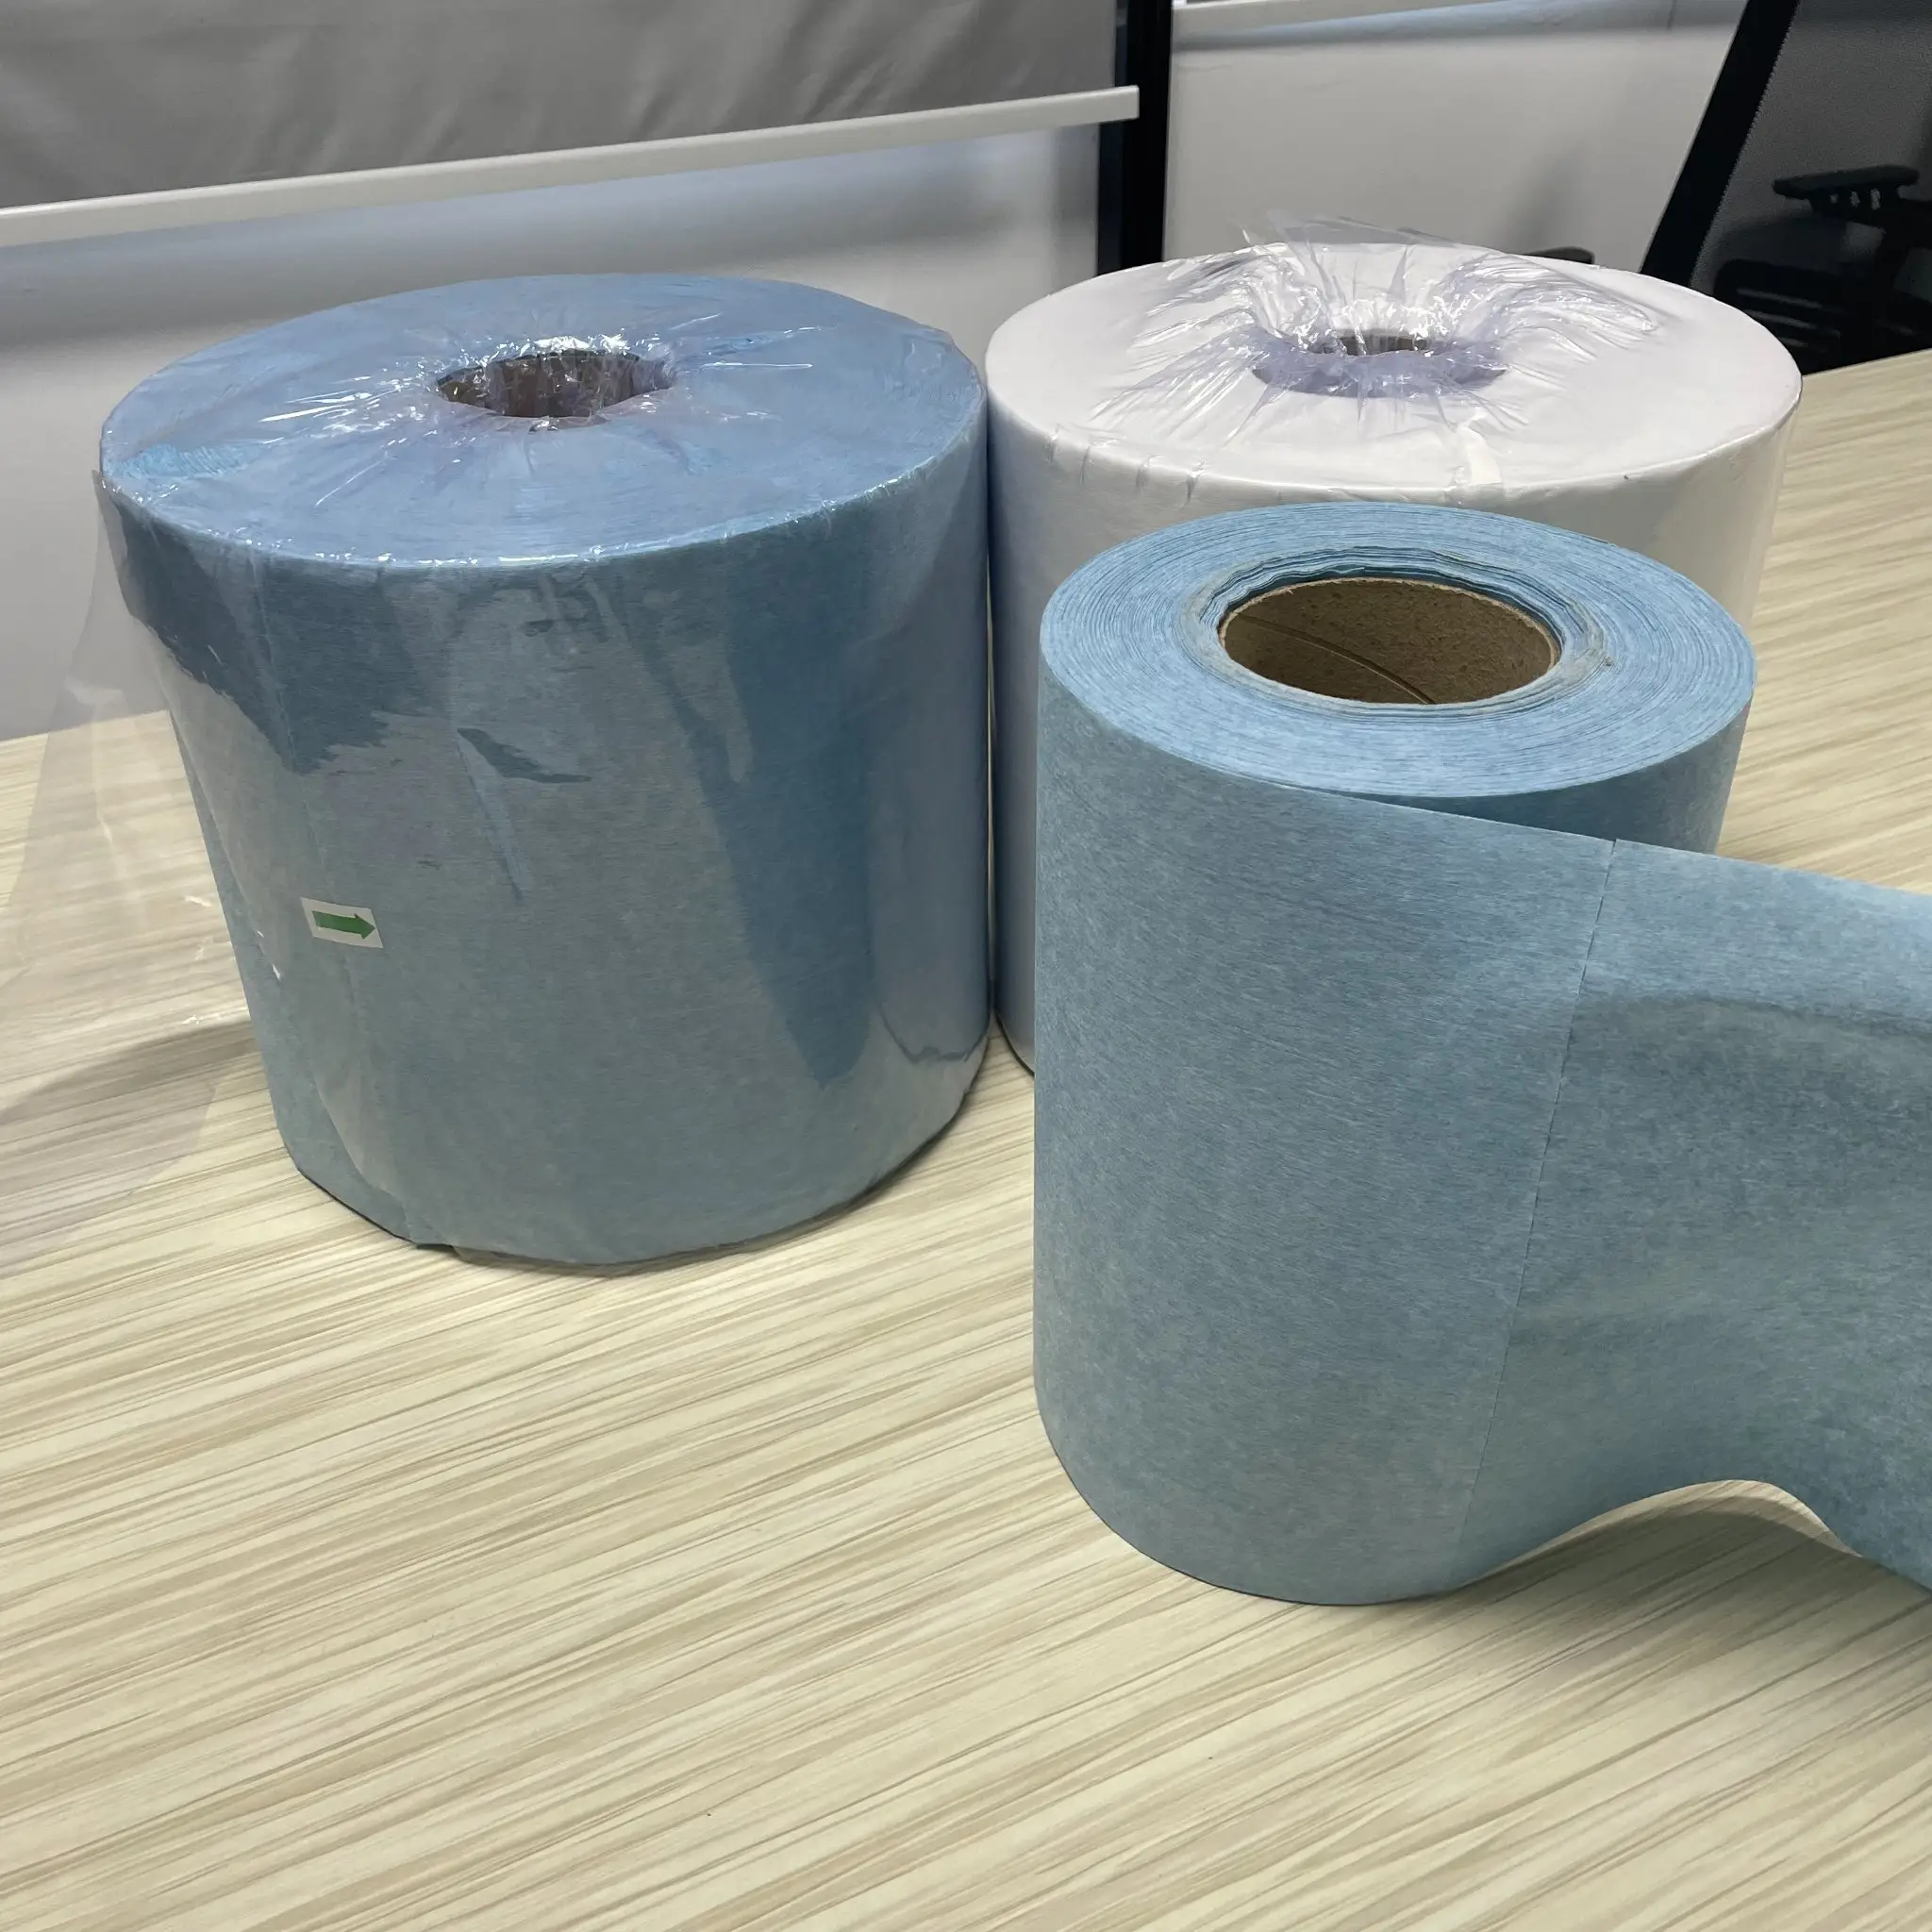 กระดาษทิชชู่เปียกแบบทนทานใช้ในงานอุตสาหกรรมผ้านอนวูฟเวนสีฟ้าแบบสั่งทำ